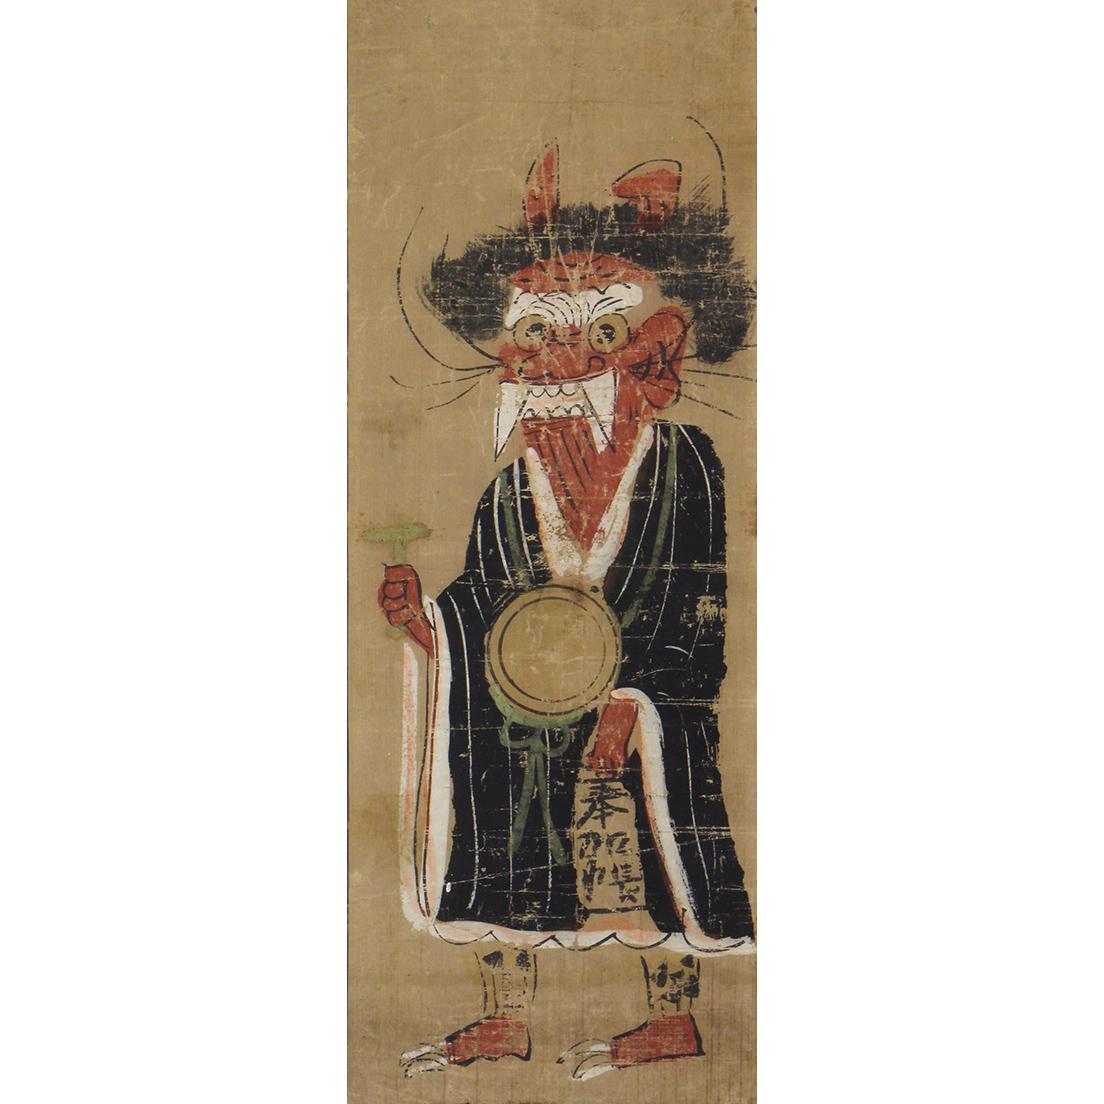 《鬼の念仏》笠間日動美術館蔵。大津絵のなかで最も代表的な画題。末期にまで描き継がれ、夜泣き止めの効能があるとされた。